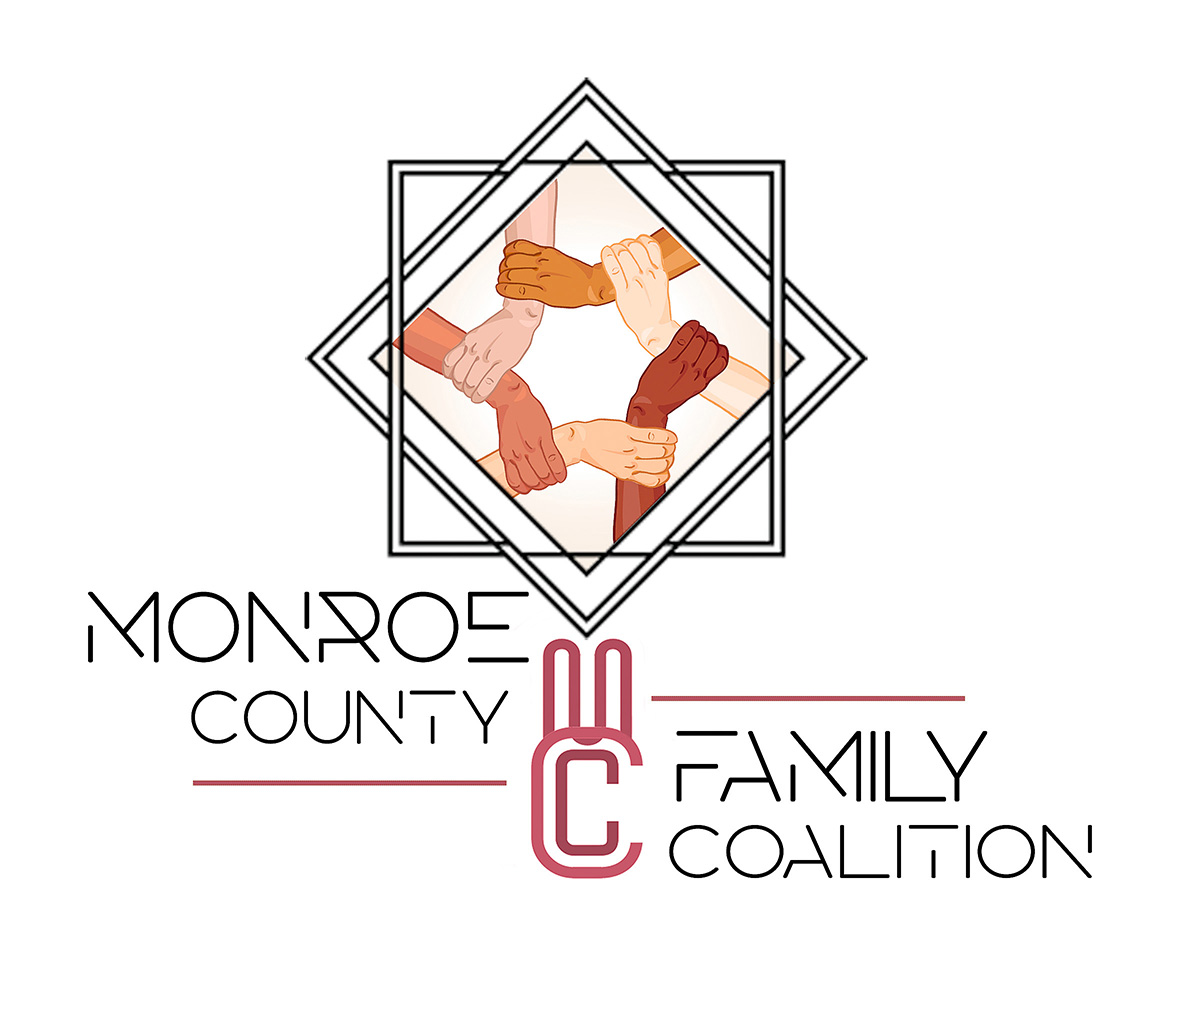 Monroe County Family Coalition Inc.